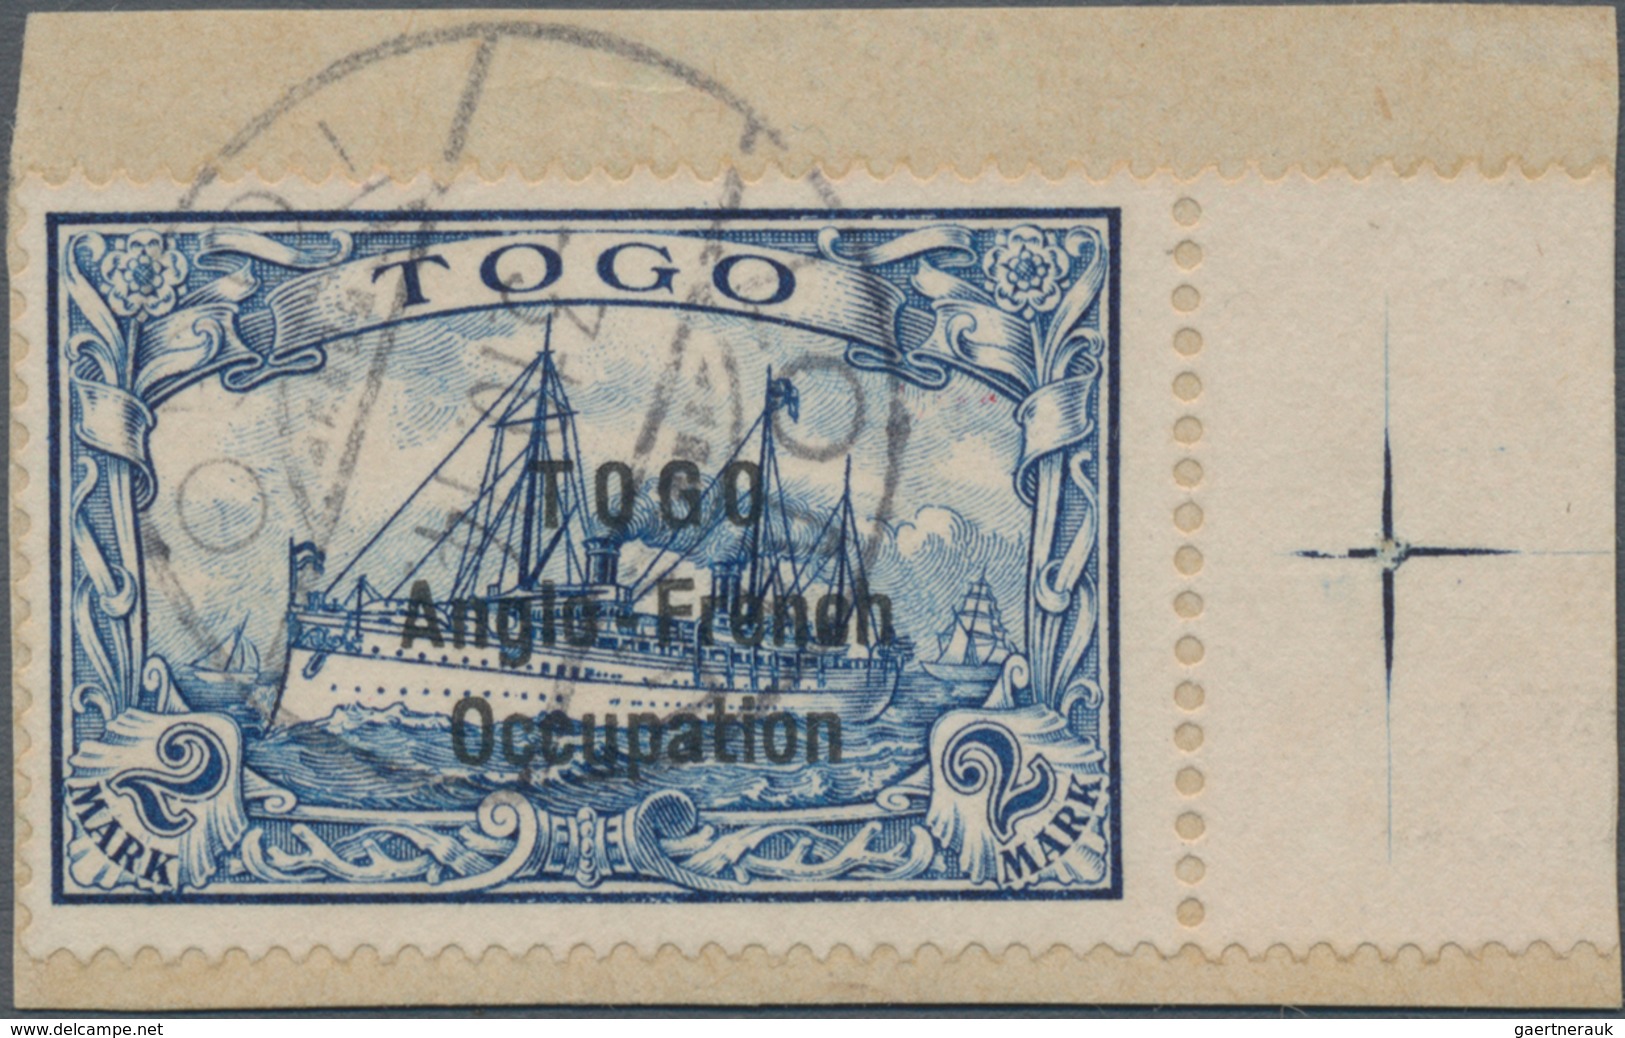 Deutsche Kolonien - Togo - Britische Besetzung: 1914, 2 Mark Kaiseryacht Mit Aufdruck "TOGO Anglo-Fr - Togo